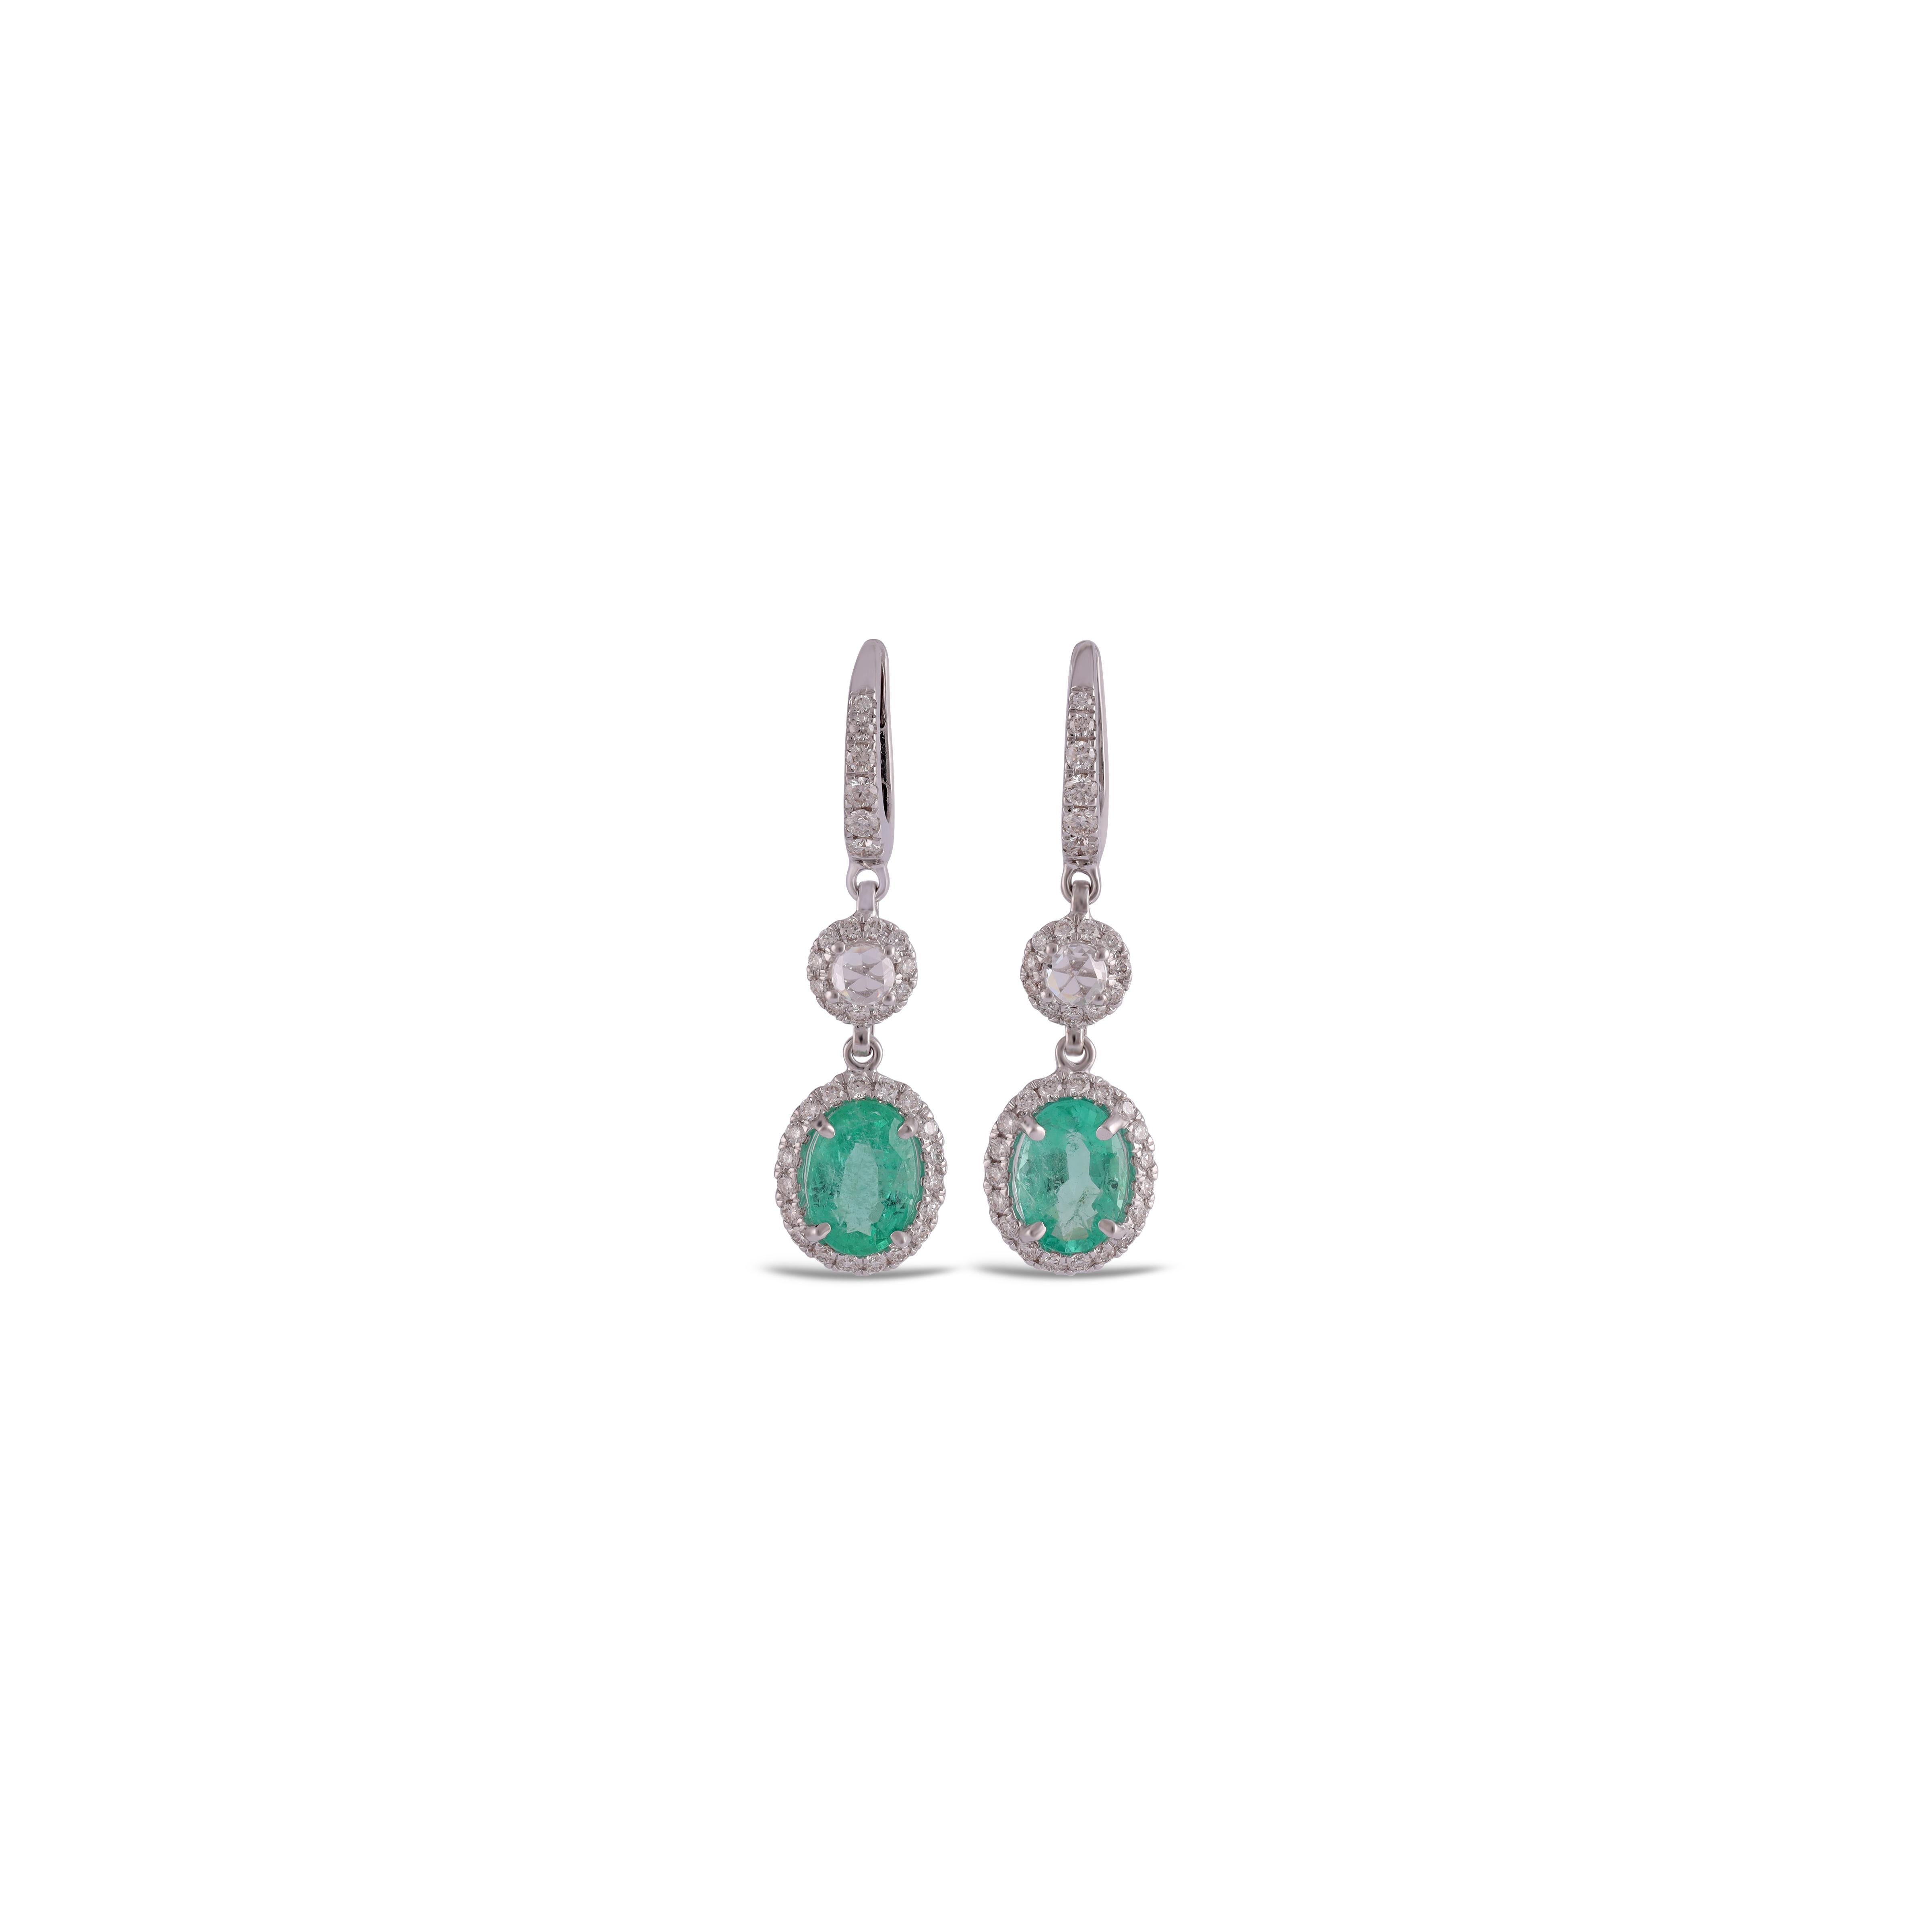 Oval Cut 2.92 Carat Clear Zambian Emerald & Diamond Classic Earring in 18K gold For Sale